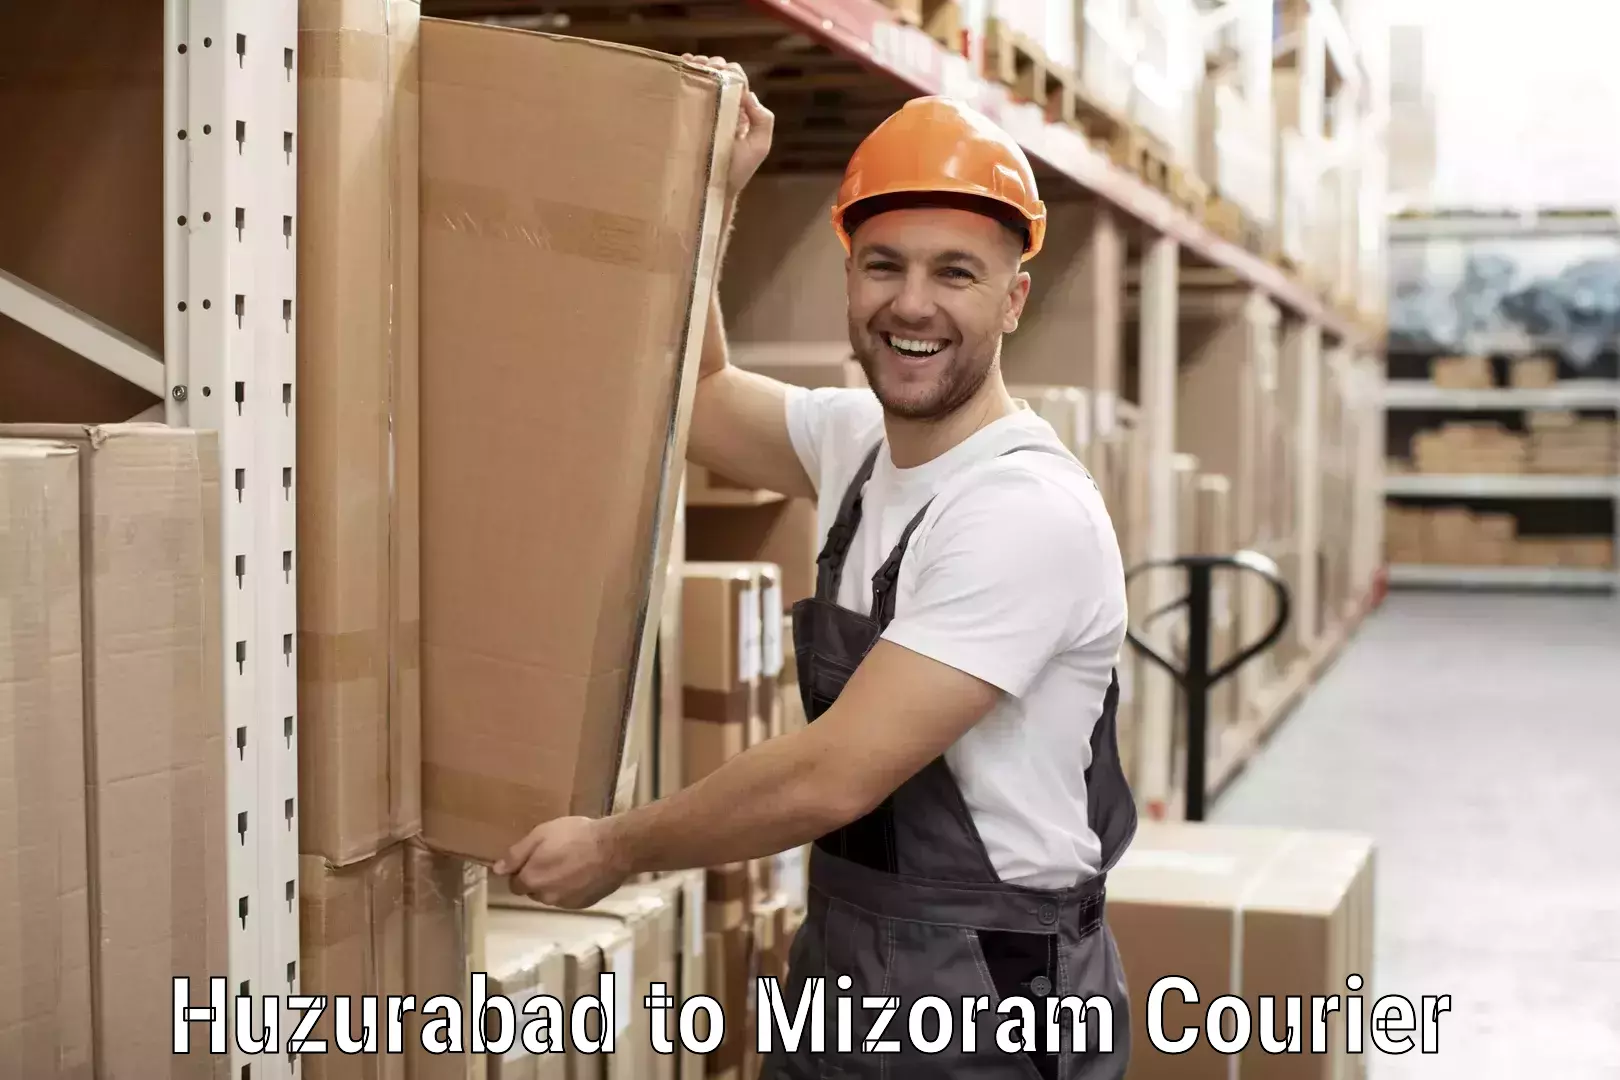 Global shipping solutions Huzurabad to Mizoram